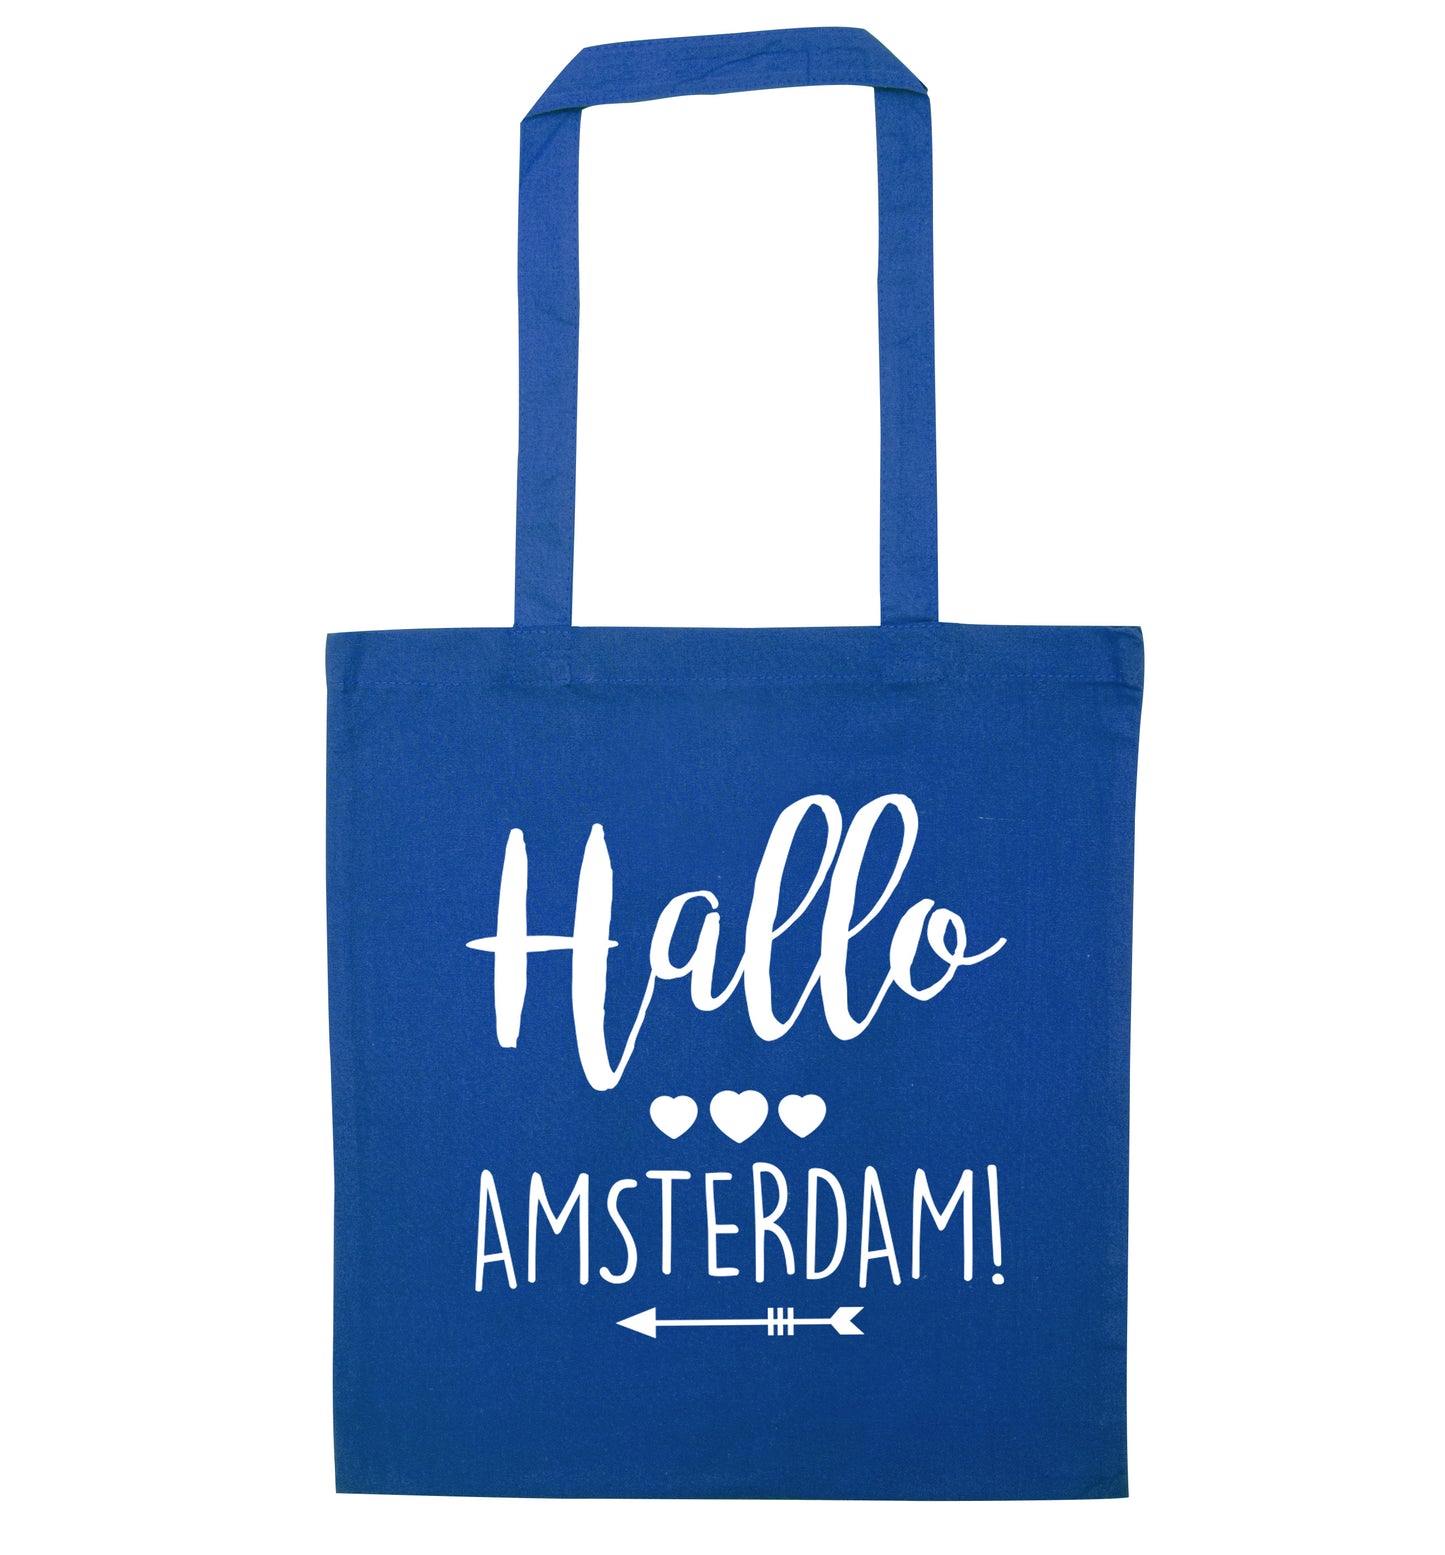 Hallo Amsterdam blue tote bag